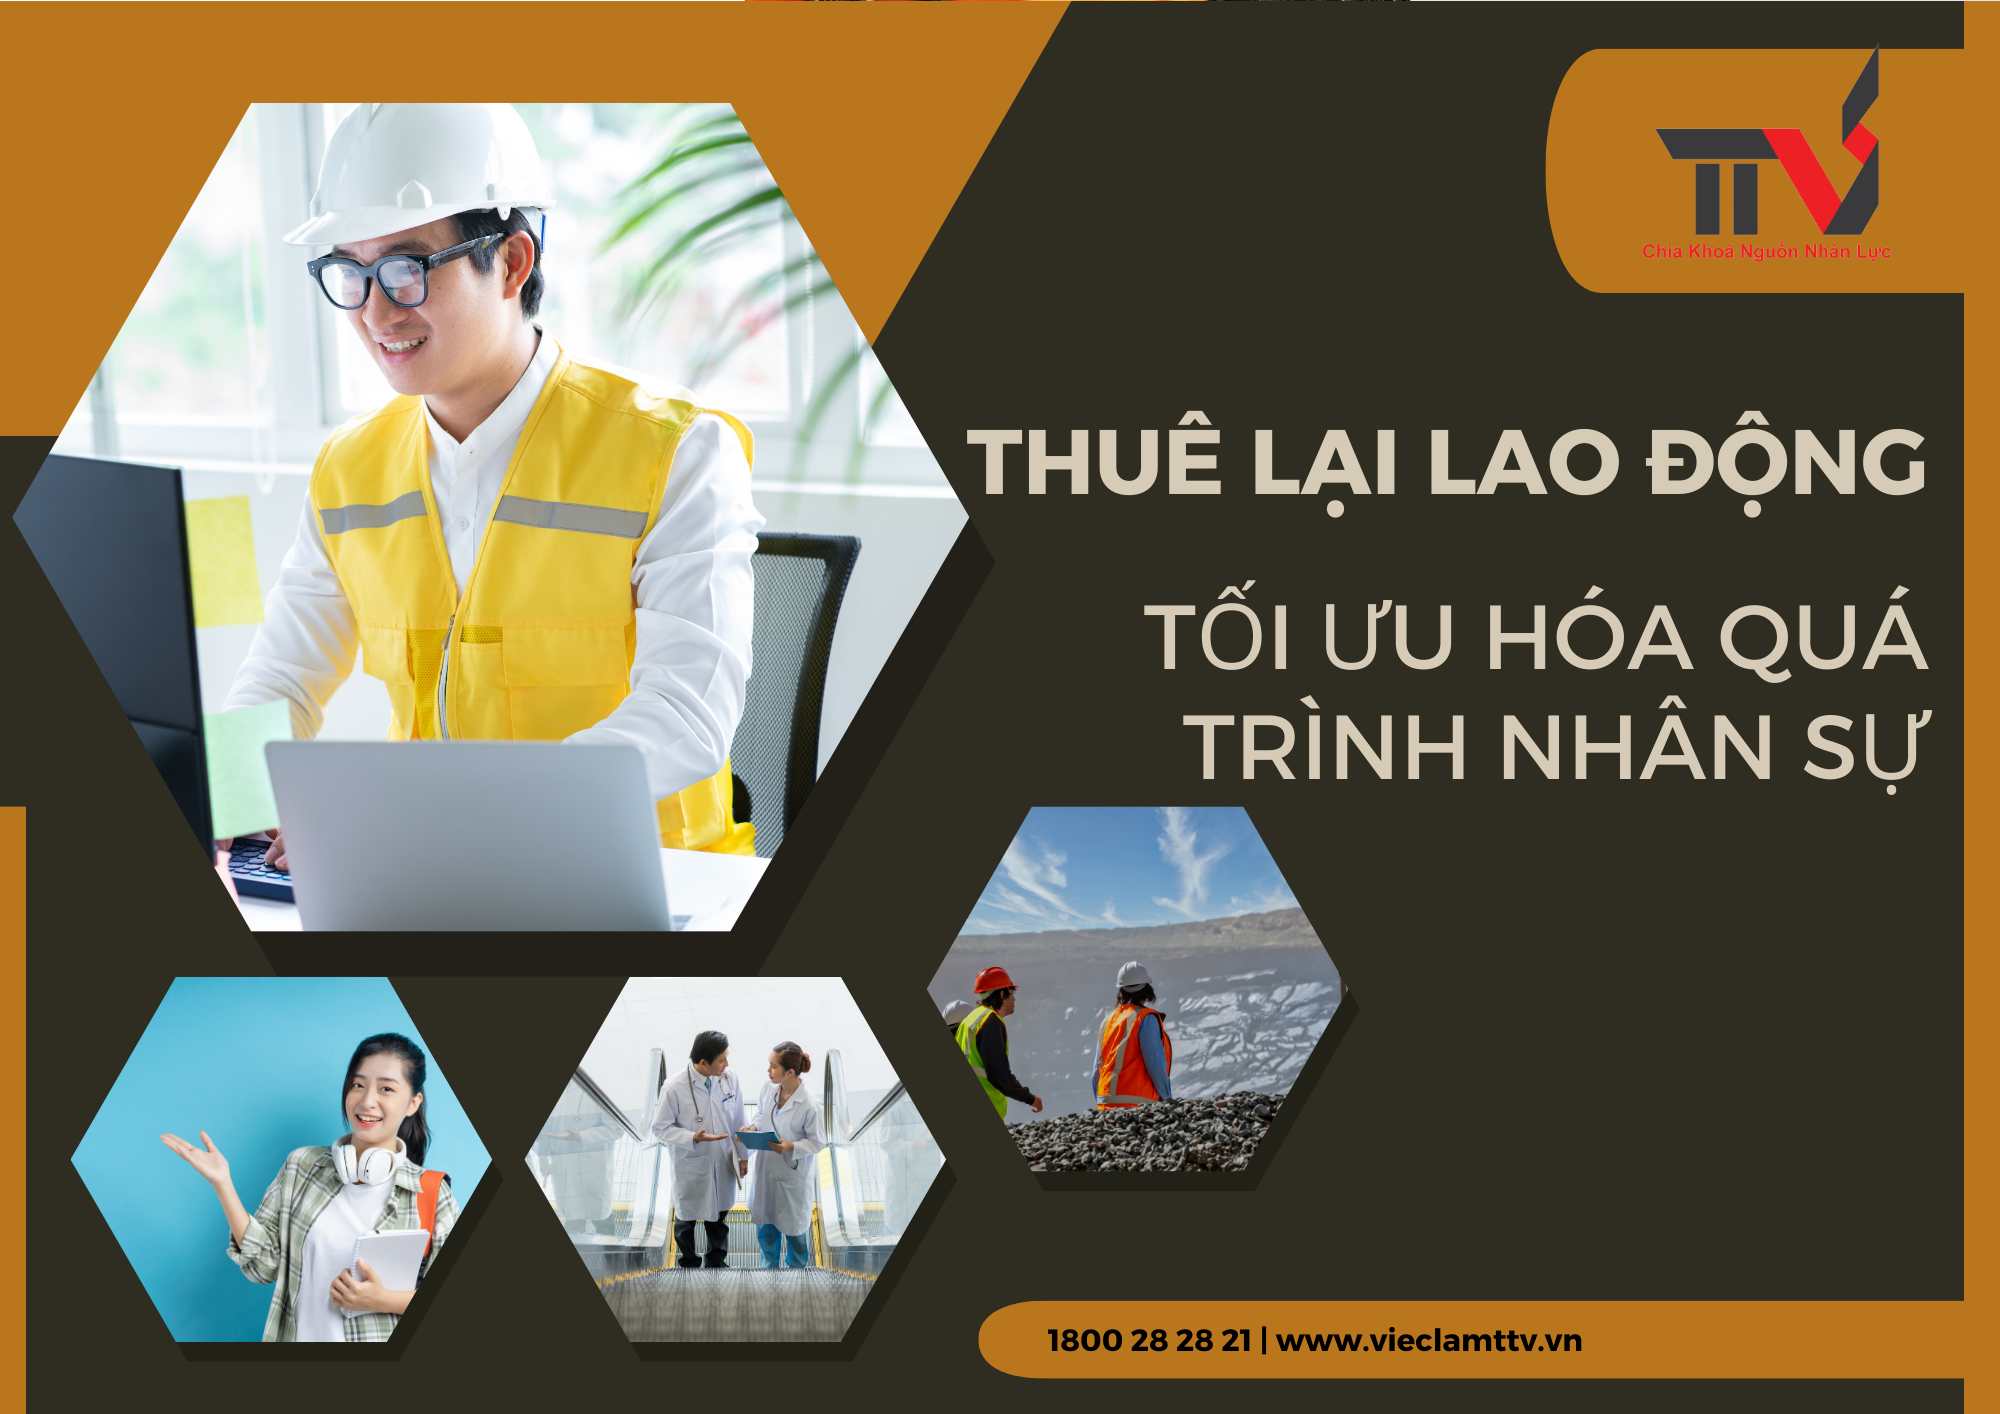 Thuê lại Lao động: Tối ưu hóa Quá trình Nhân sự tại Khu vực Hồ Chí Minh, Bình Dương và Đồng Nai cùng TTV GROUP